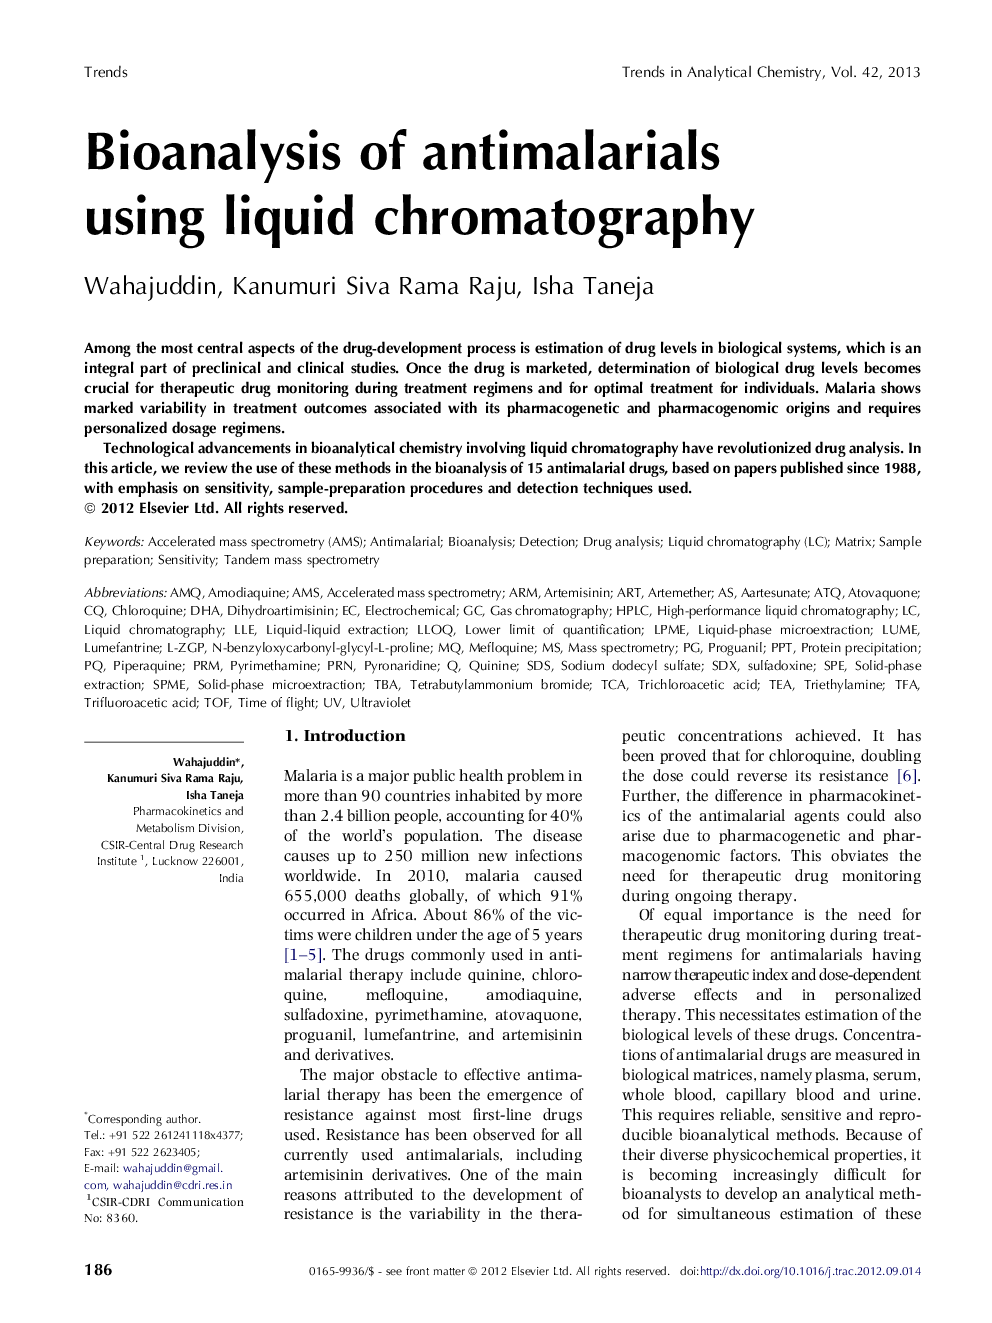 Bioanalysis of antimalarials using liquid chromatography